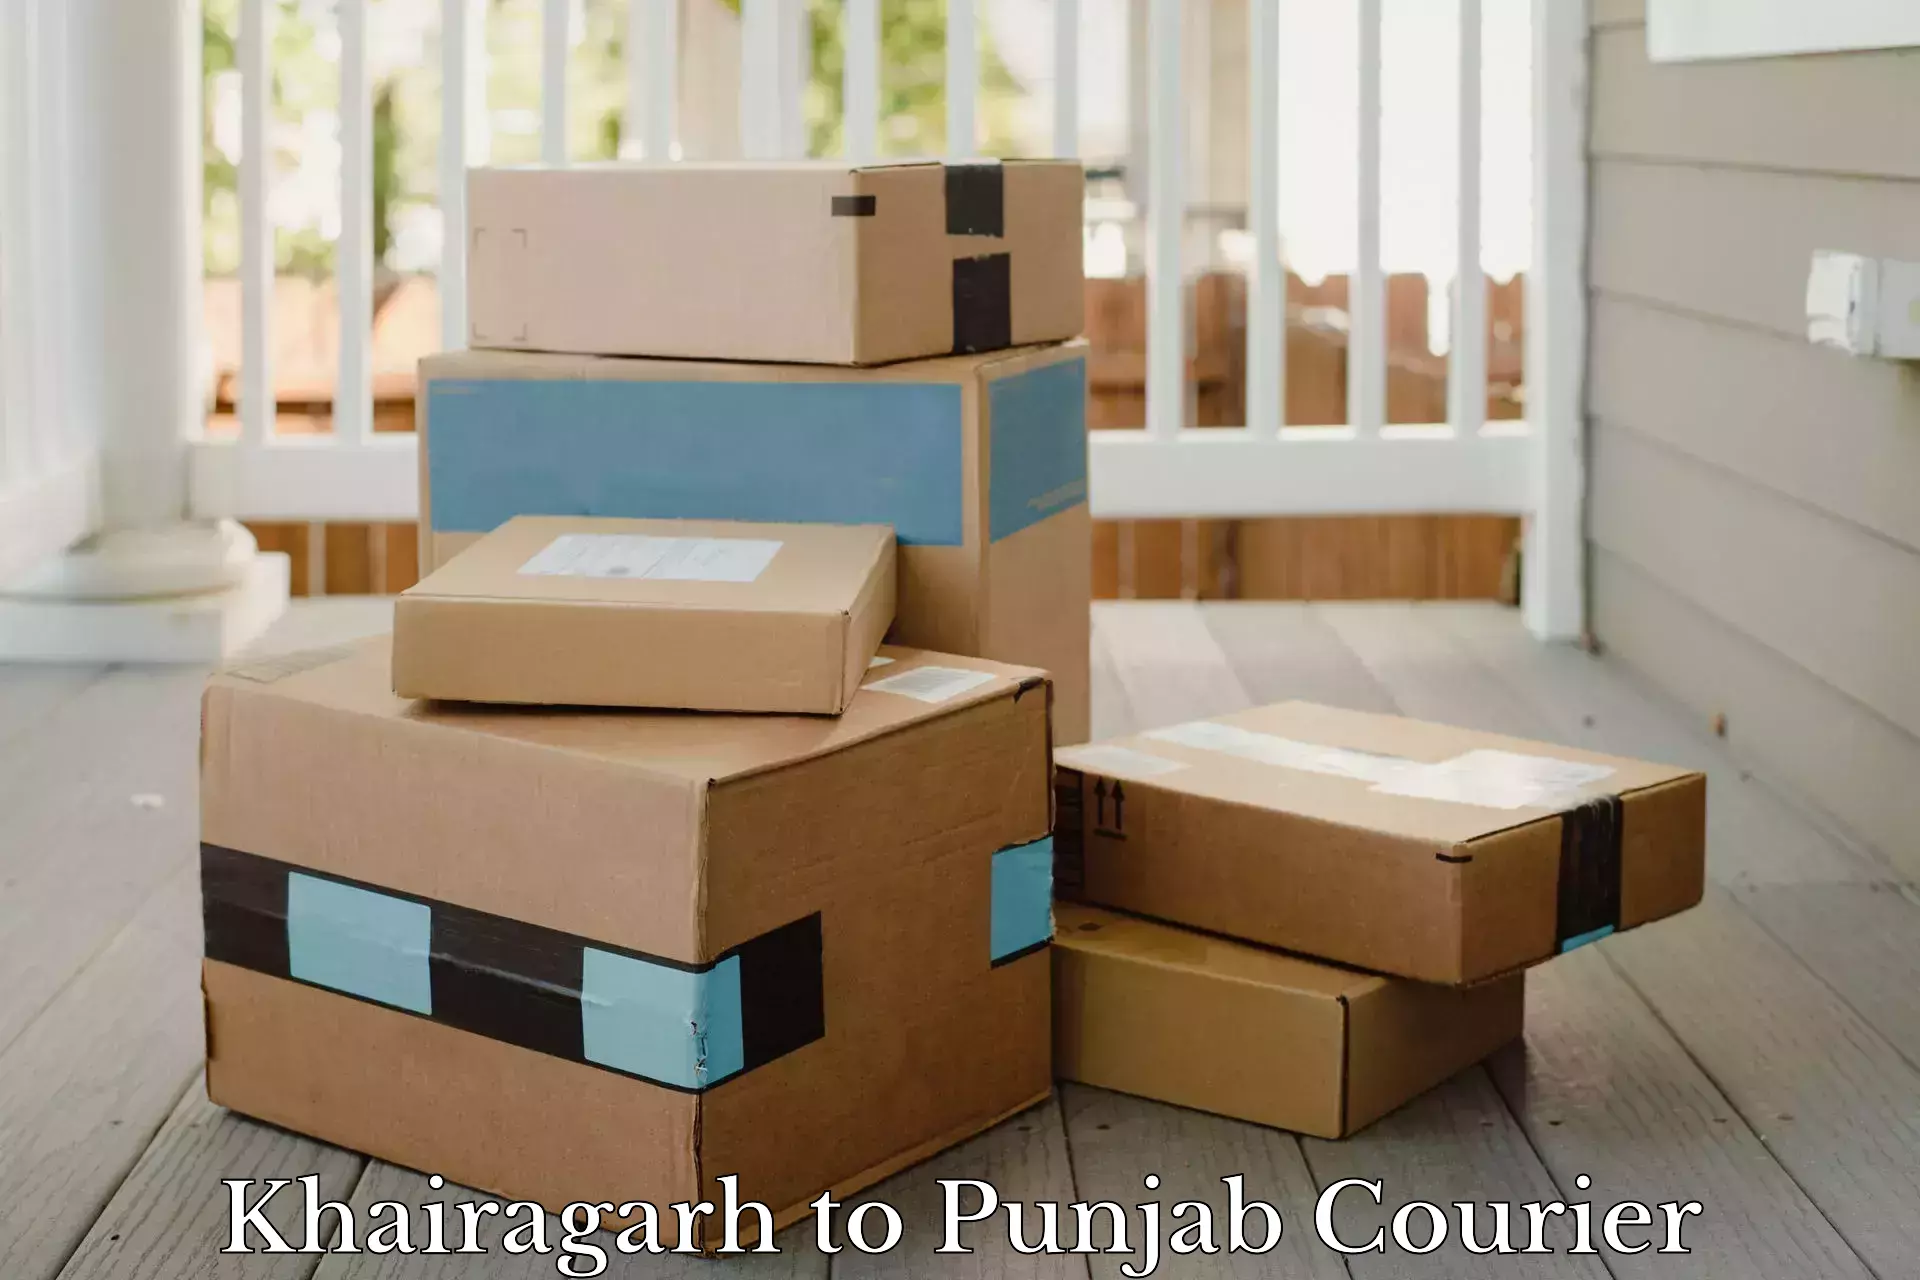 Courier service partnerships Khairagarh to Gurdaspur